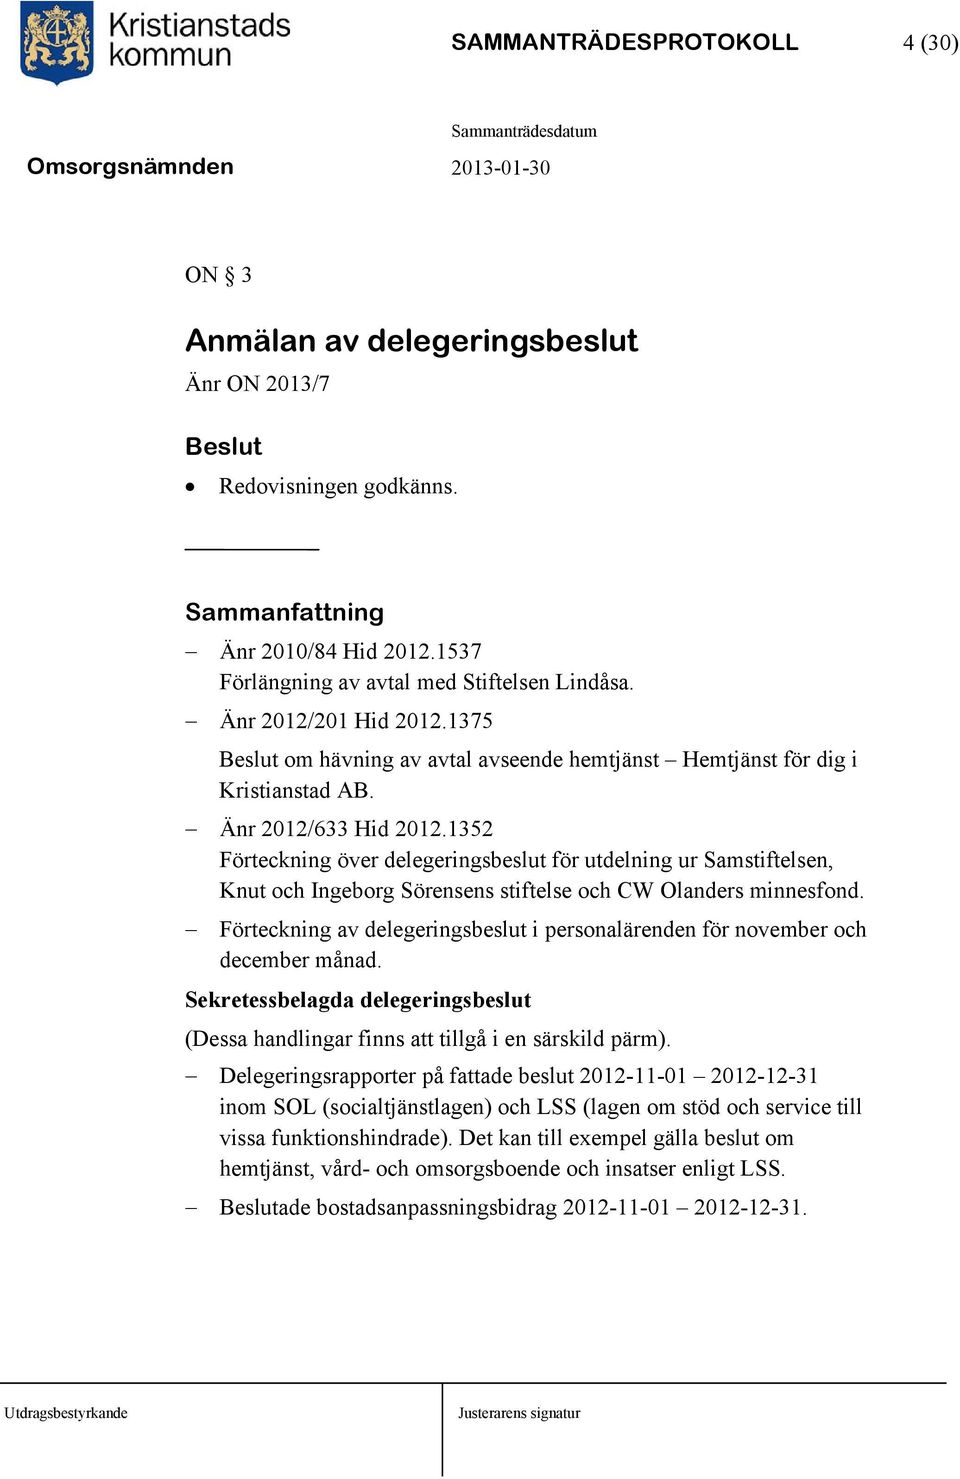 1352 Förteckning över delegeringsbeslut för utdelning ur Samstiftelsen, Knut och Ingeborg Sörensens stiftelse och CW Olanders minnesfond.